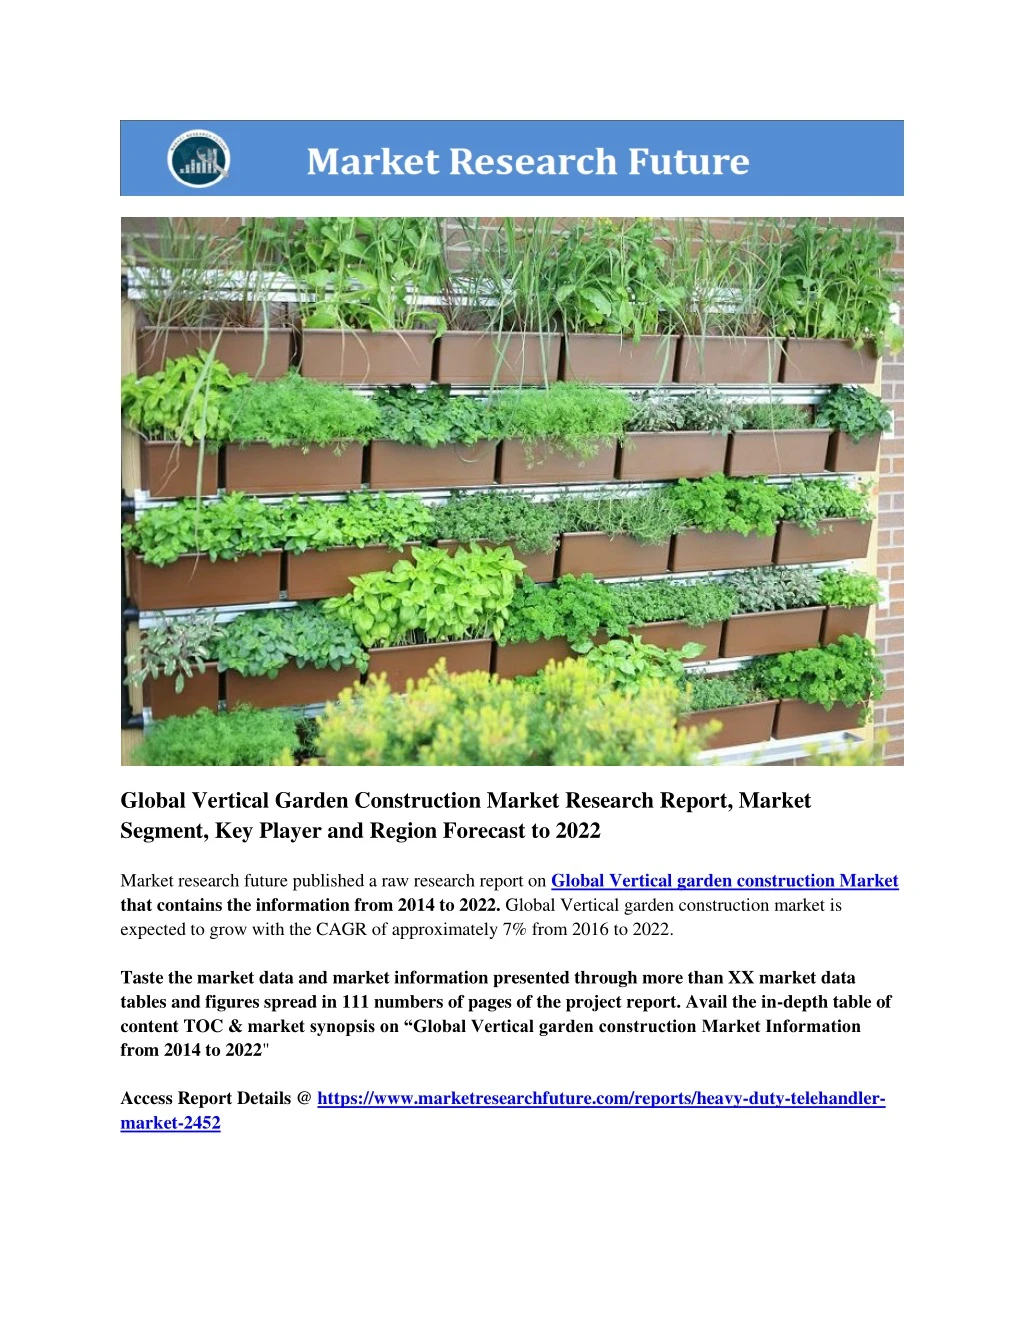 global vertical garden construction market